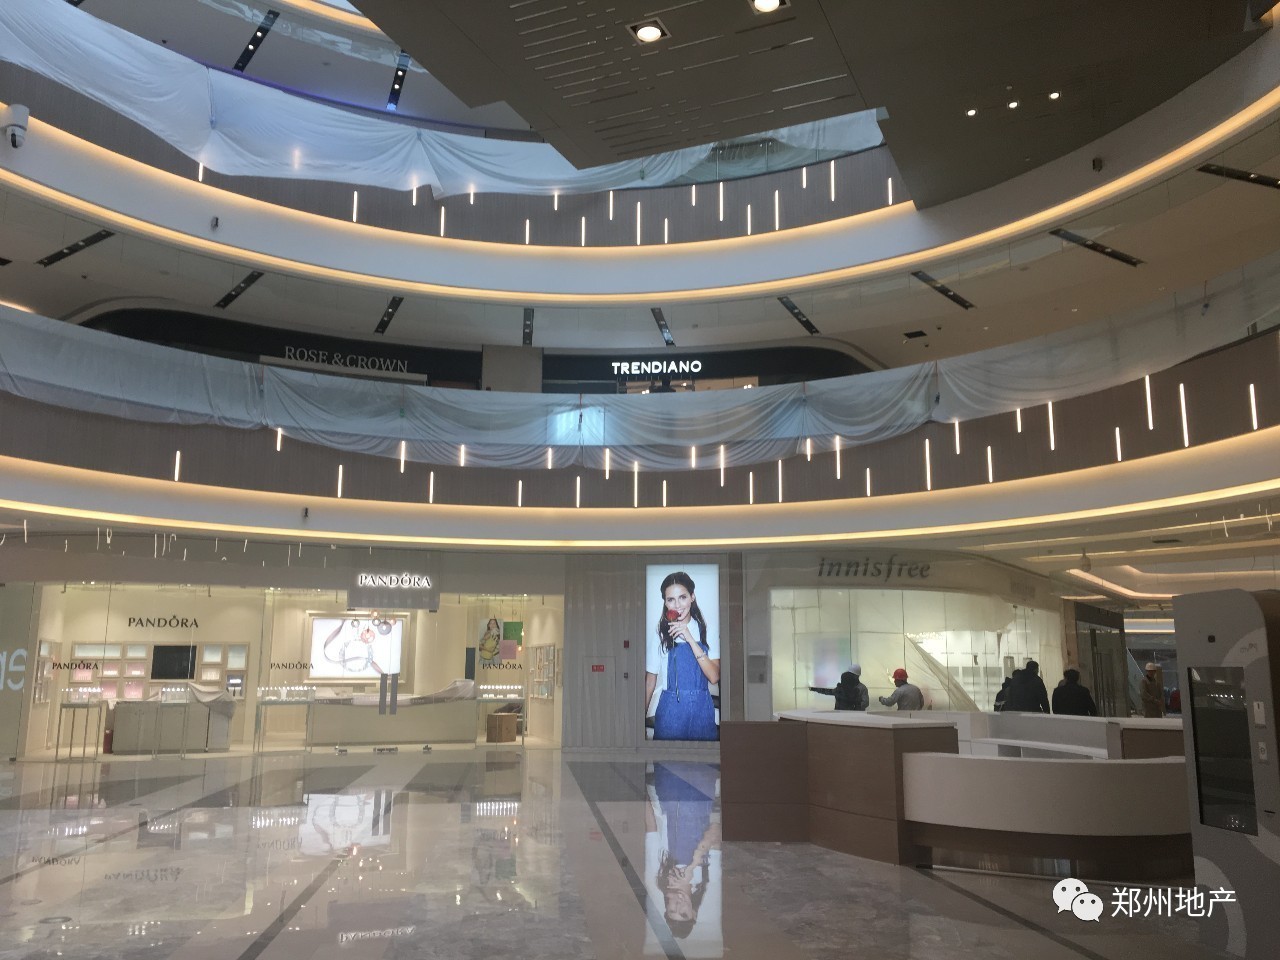 cityon熙地港(郑州)购物中心采用了塔博曼一贯坚持的无柱式设计,无论